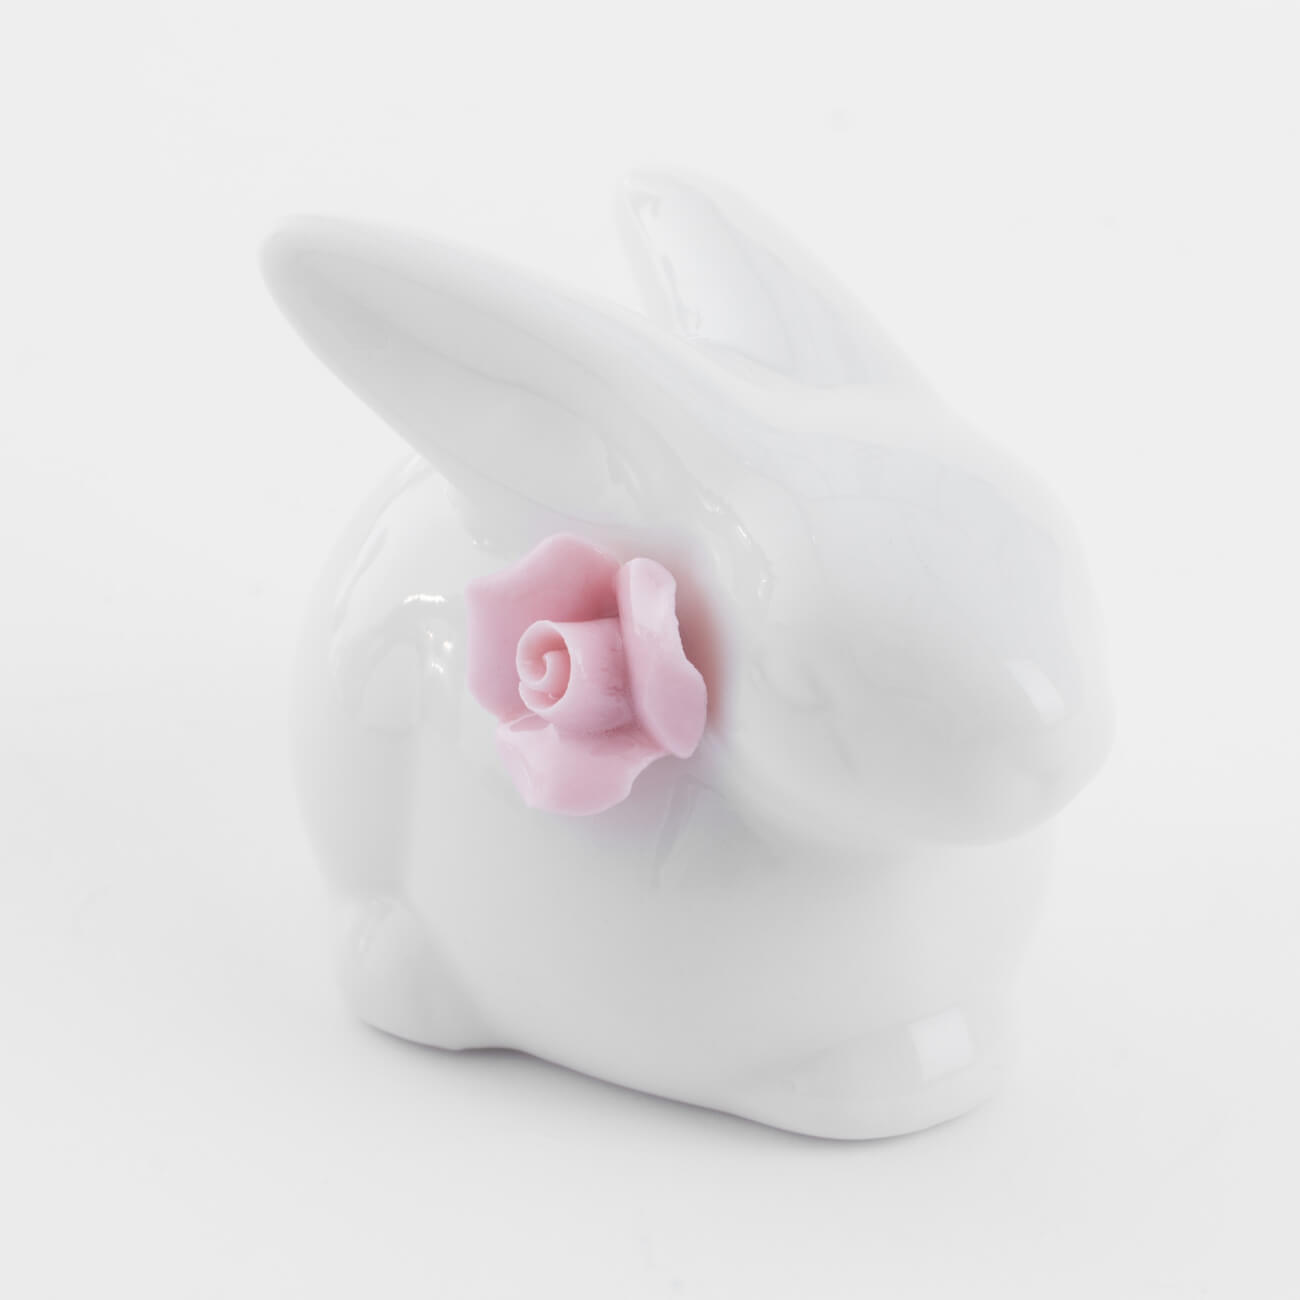 Статуэтка, 5 см, фарфор P, белая, Кролик с цветком, Pure Easter статуэтка 14 см фарфор p бежевая кролик сидит natural easter